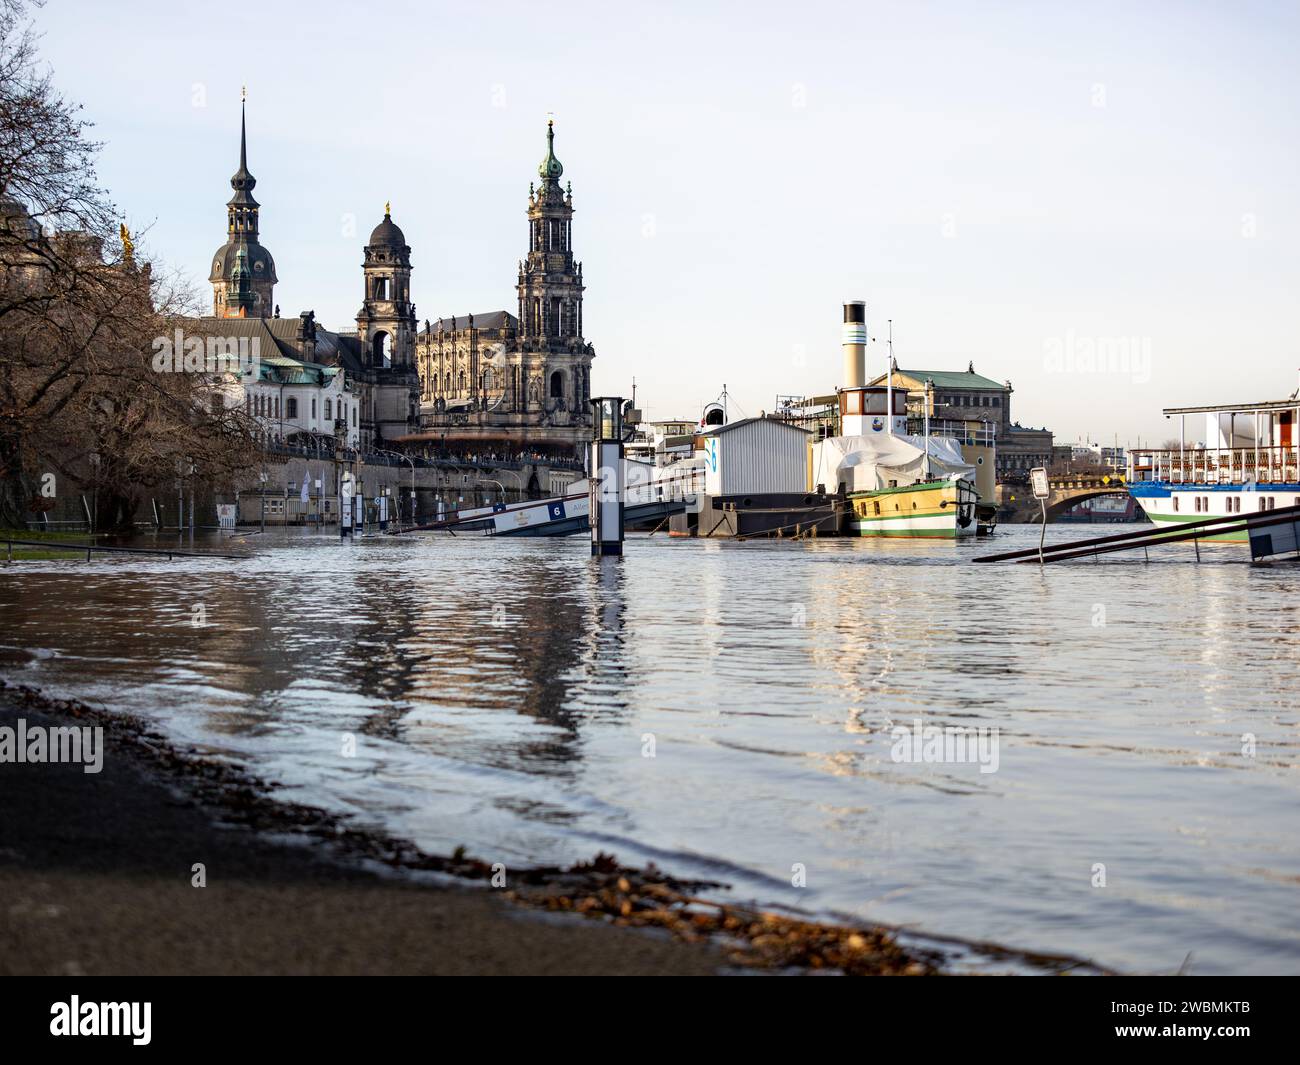 Alluvione del fiume Elba nella città vecchia di Dresda. La strada Terrassenufer è chiusa a causa dell'acqua traboccante. I piroscafi stanno galleggiando sull'acqua. Foto Stock